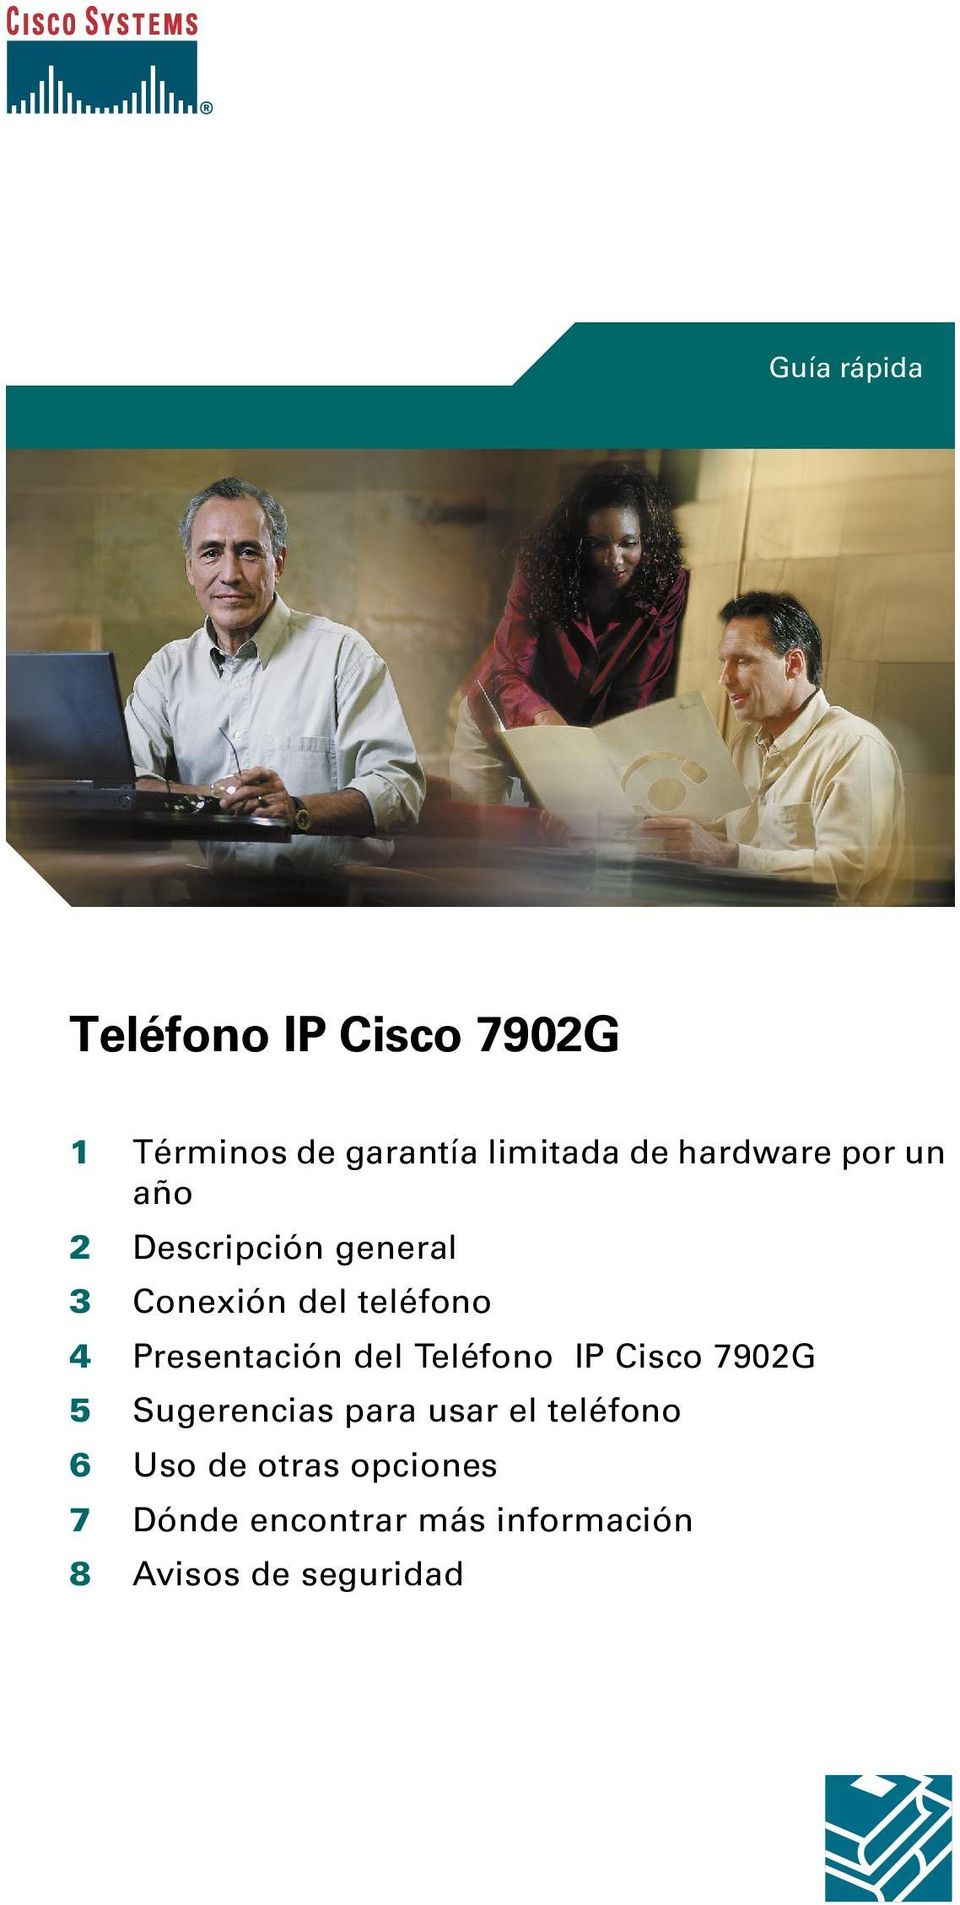 Presentación del Teléfono IP Cisco 7902G 5 Sugerencias para usar el